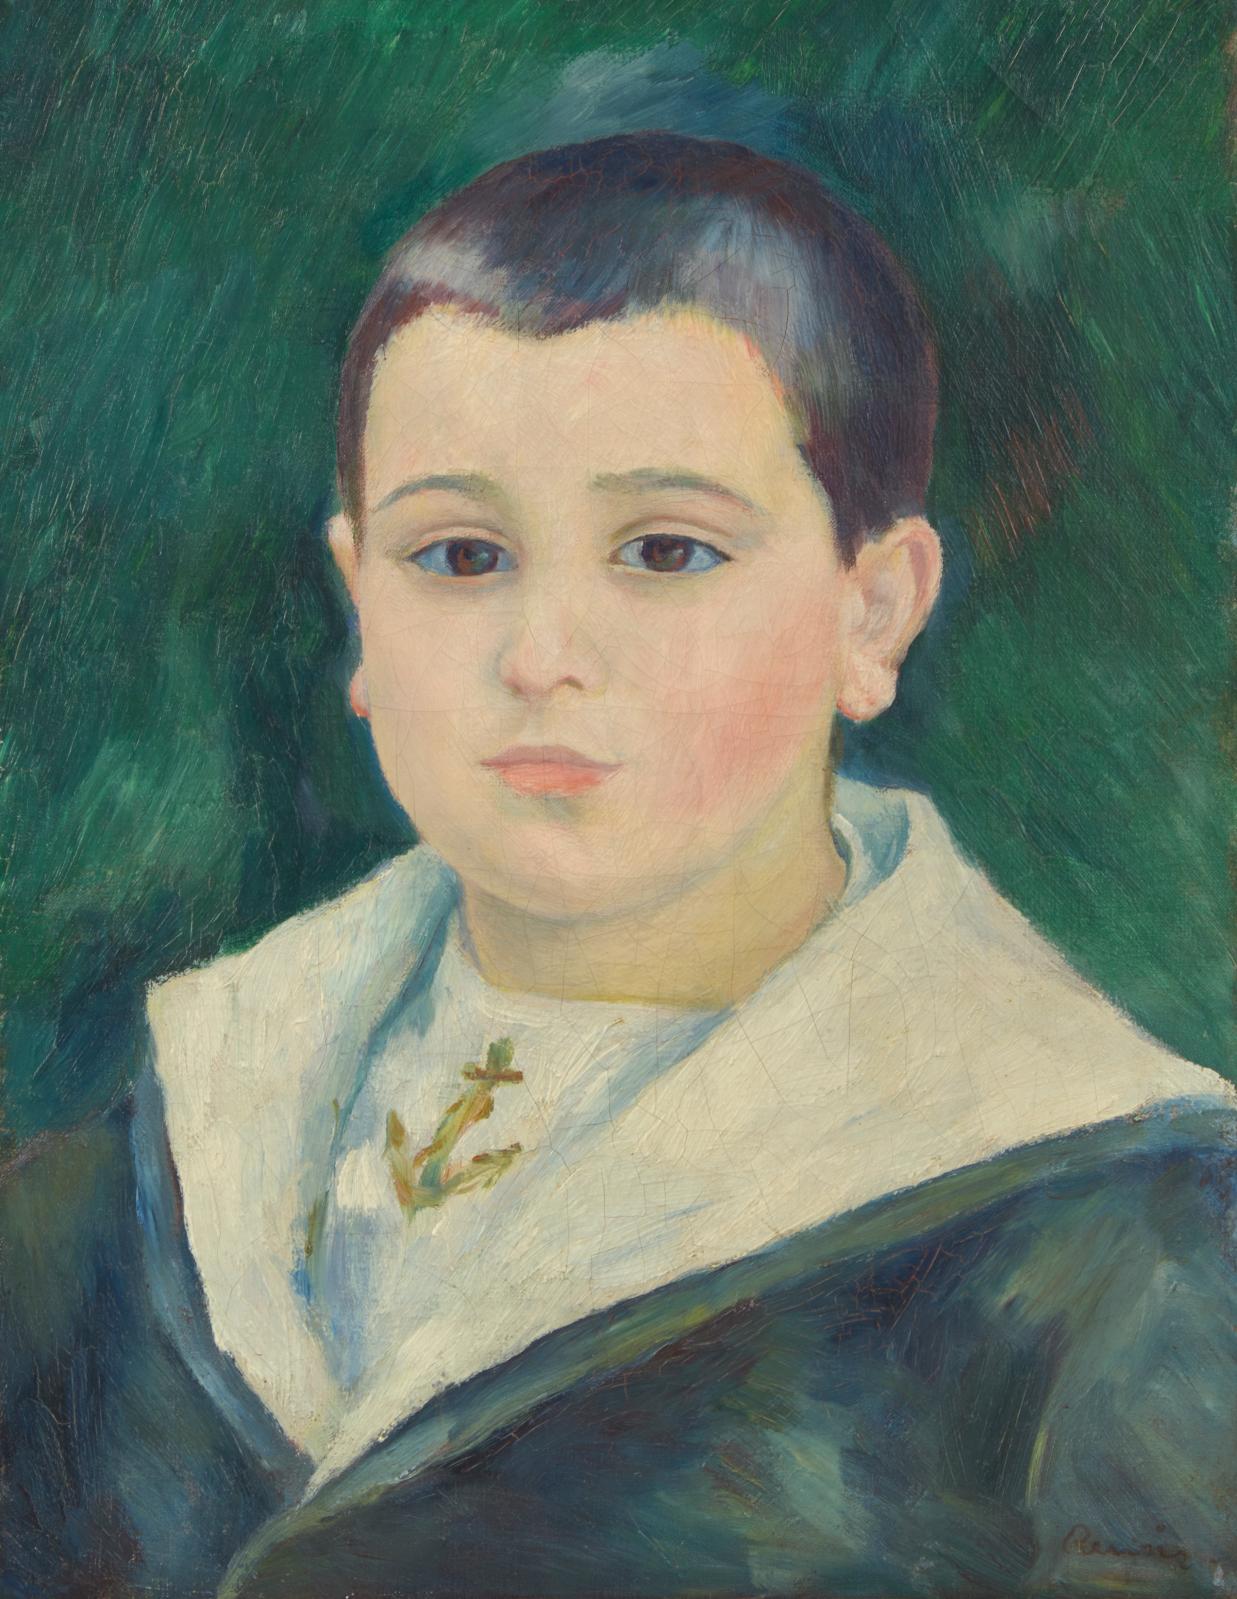 Les portraits mondains  de Renoir